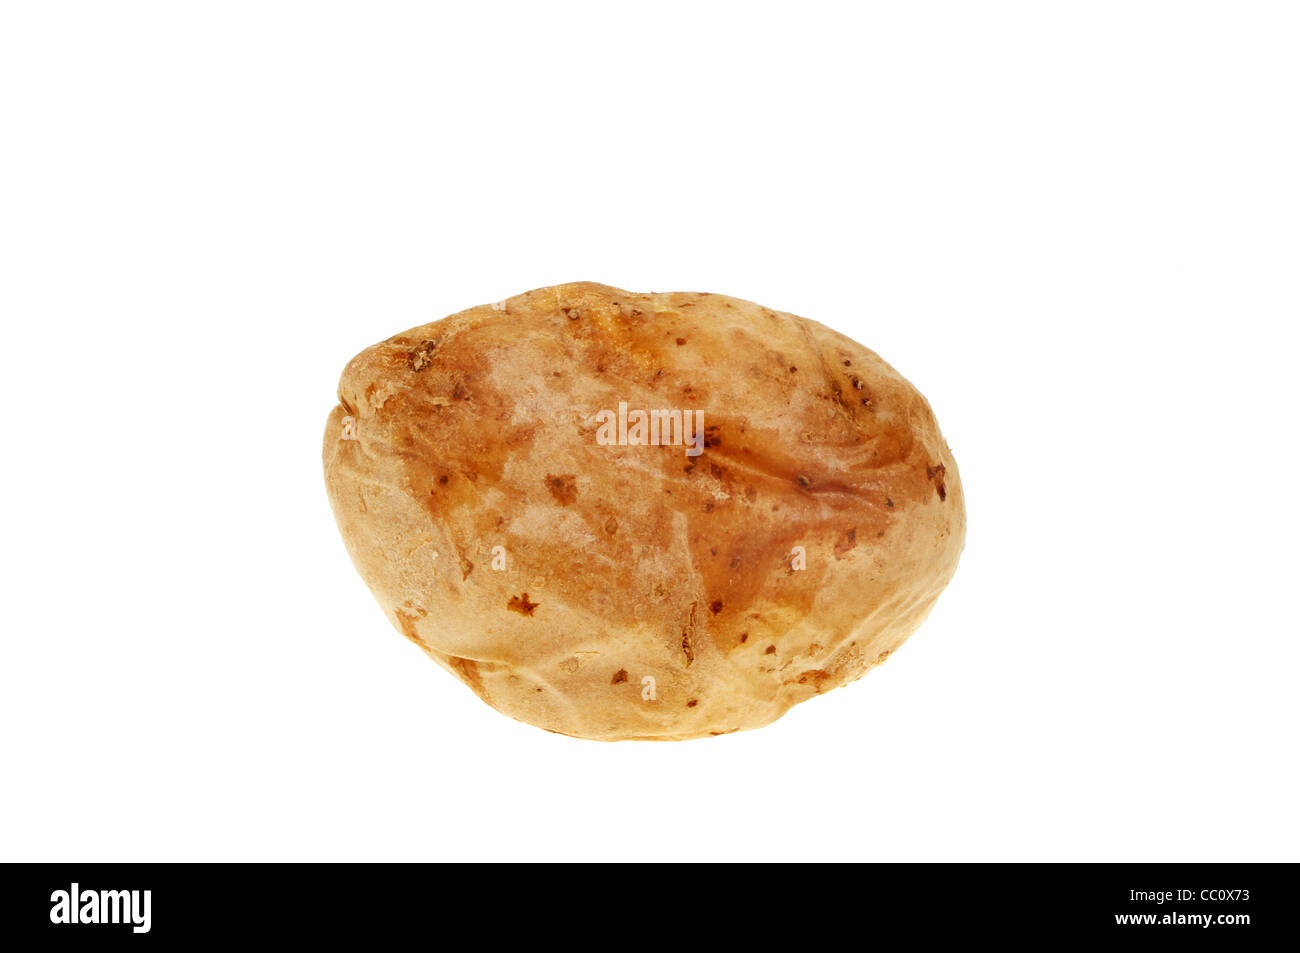 Baked potato isolated against white Stock Photo